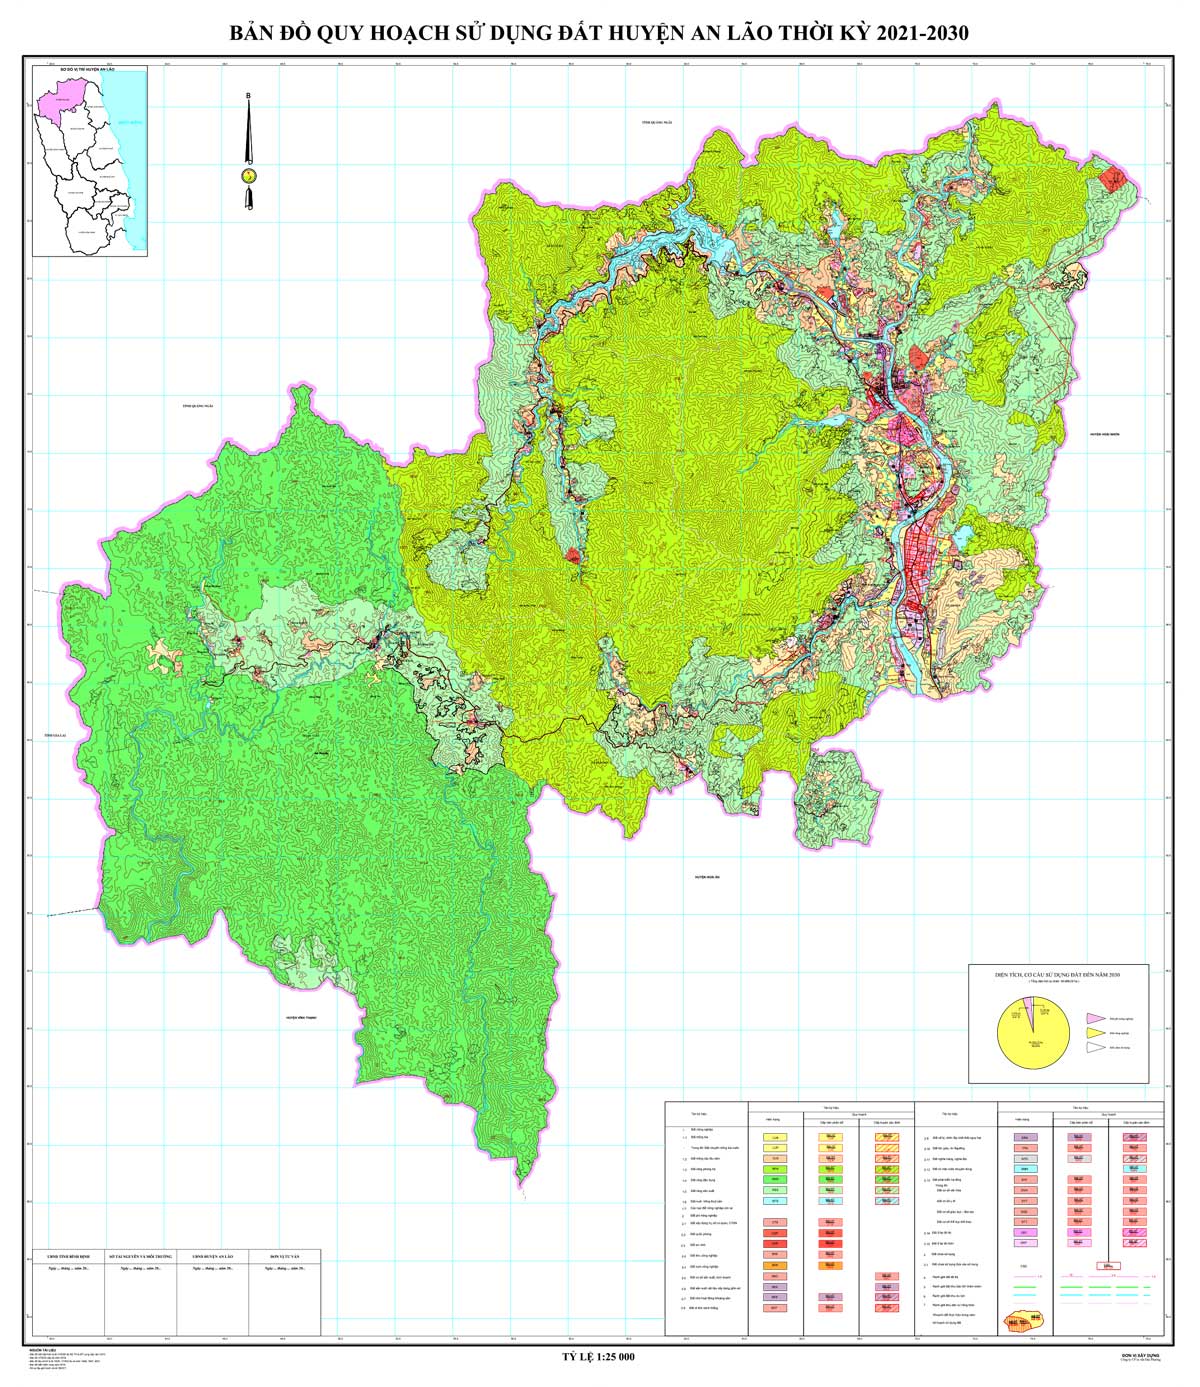 Bản đồ QHSDĐ huyện An Lão đến năm 2030